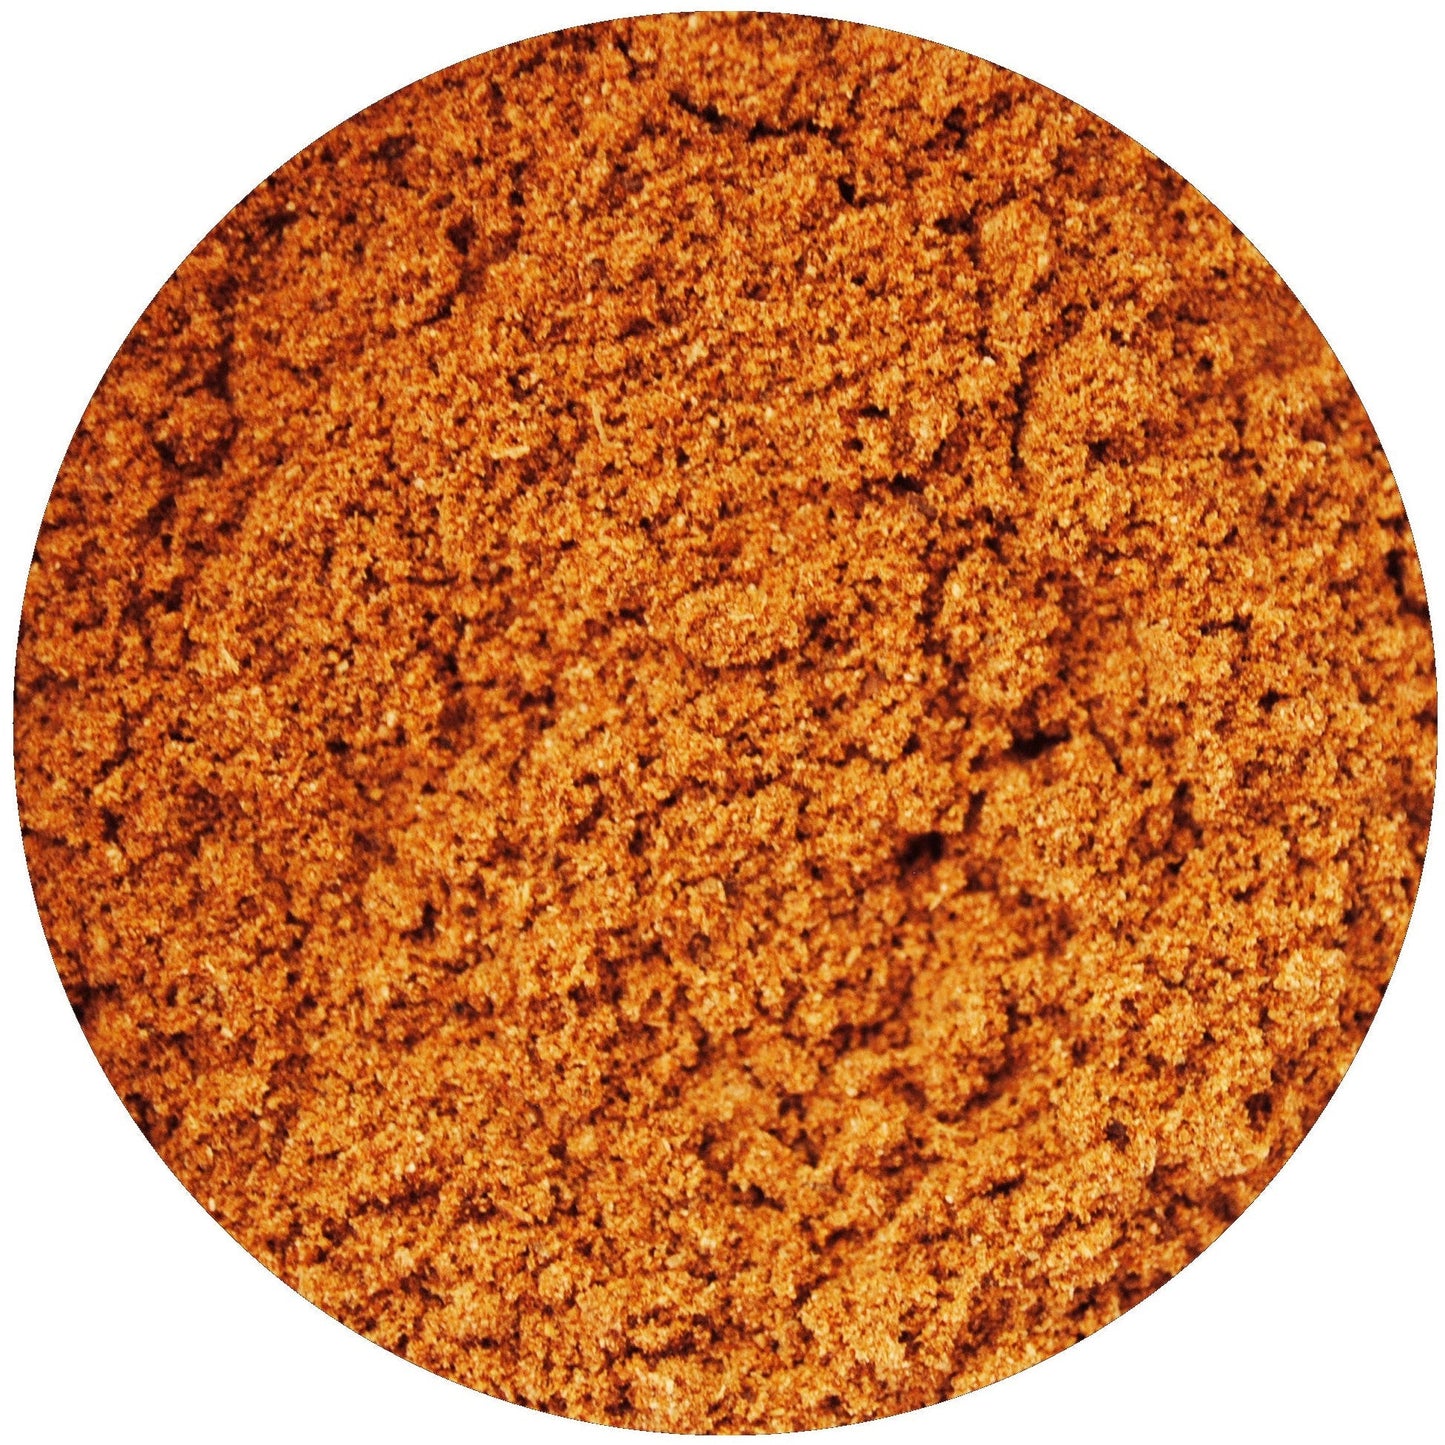 Gingerbread Spice Mix 1.5oz - Unique Flavors Seasonings & Spices Unique Flavors LLC 